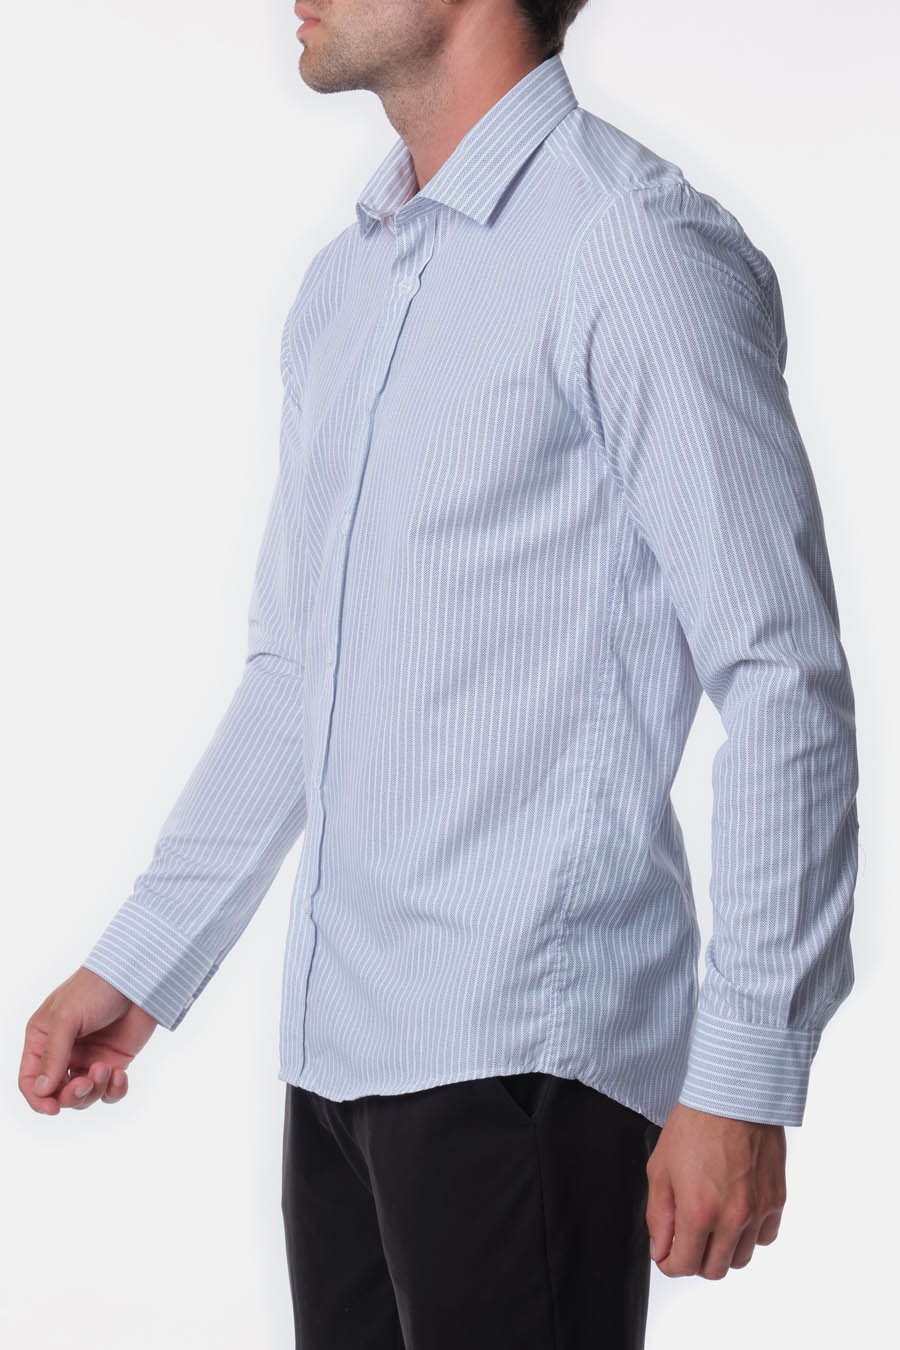 Ανδρικό πουκάμισο Keon, Λευκό/Μπλε 3